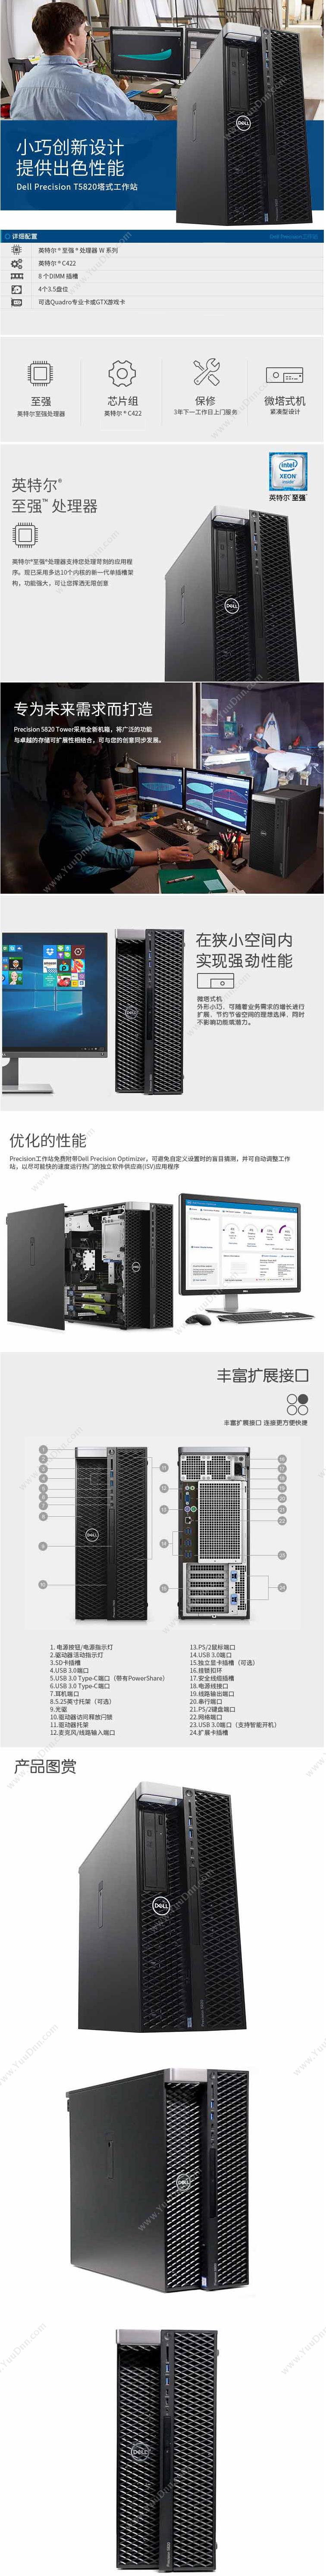 戴尔 Dell Precision 5820 Tower（Xeon W-2145（8C 3.7GHz）处理器/128G内存/512SSD+2TB硬盘/RTX2080TI显卡/950W电源） 工作站 台式工作站